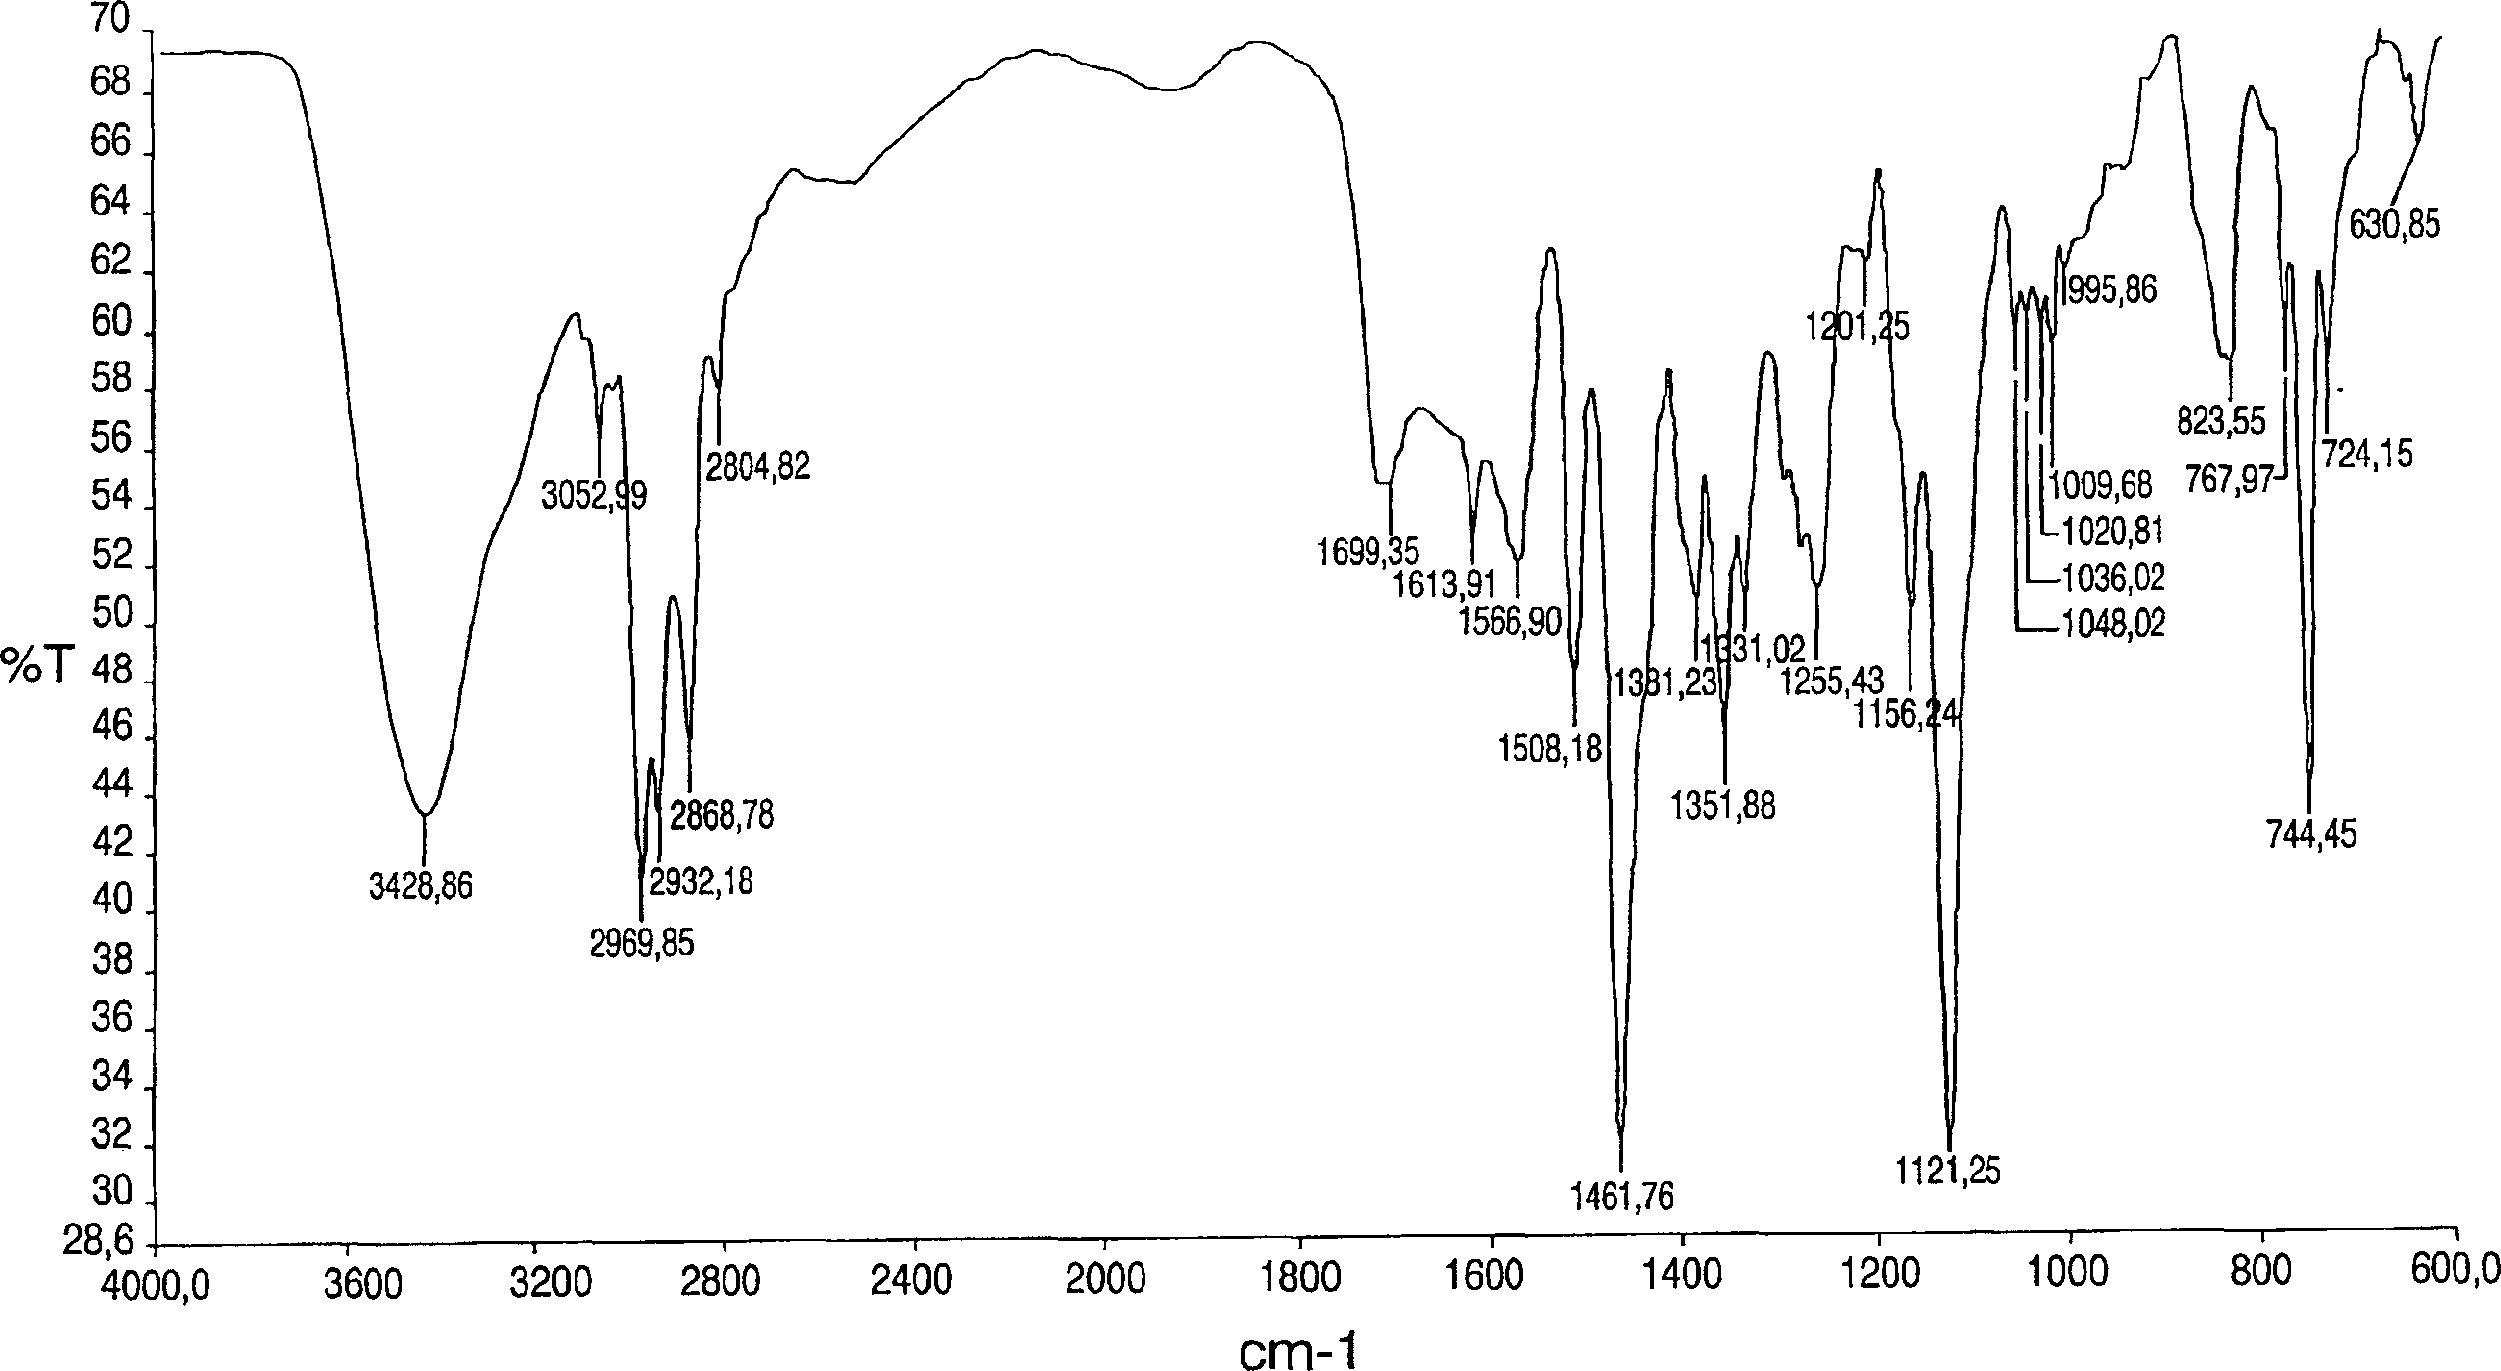 Polymorph of acid 4-[2-[4-[1-2-ethoxyethyl)-1h-benzimidazole-2-il]-1-piper idinyl]ethyl]-dollar G (A), dollar G (A)-dimethyl-benzeneacetic